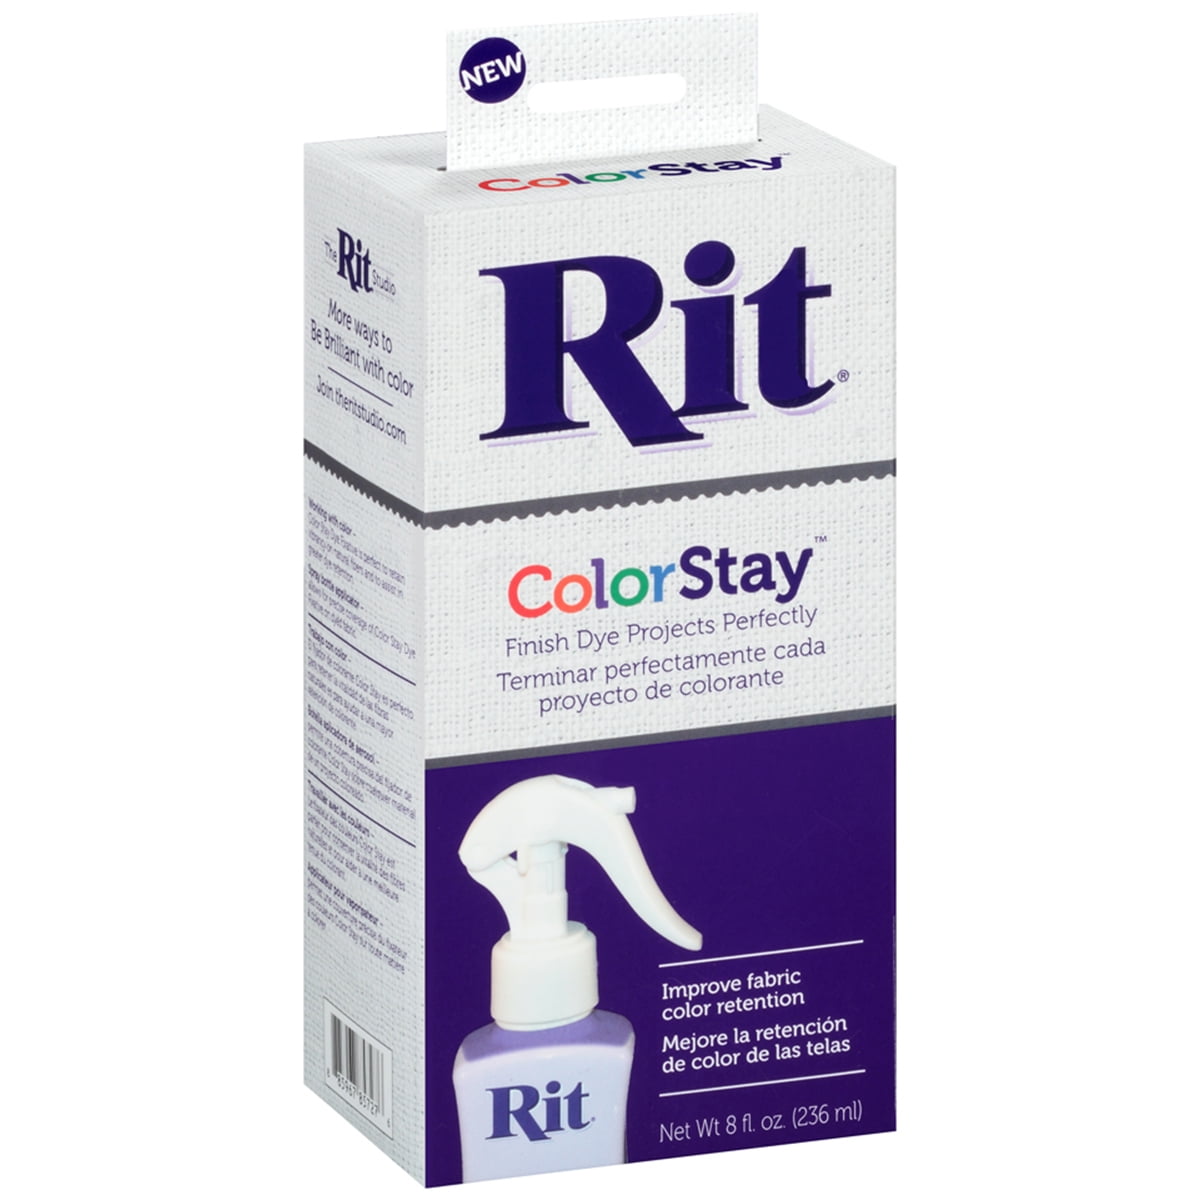 Rit Dye Fixative - Liquid